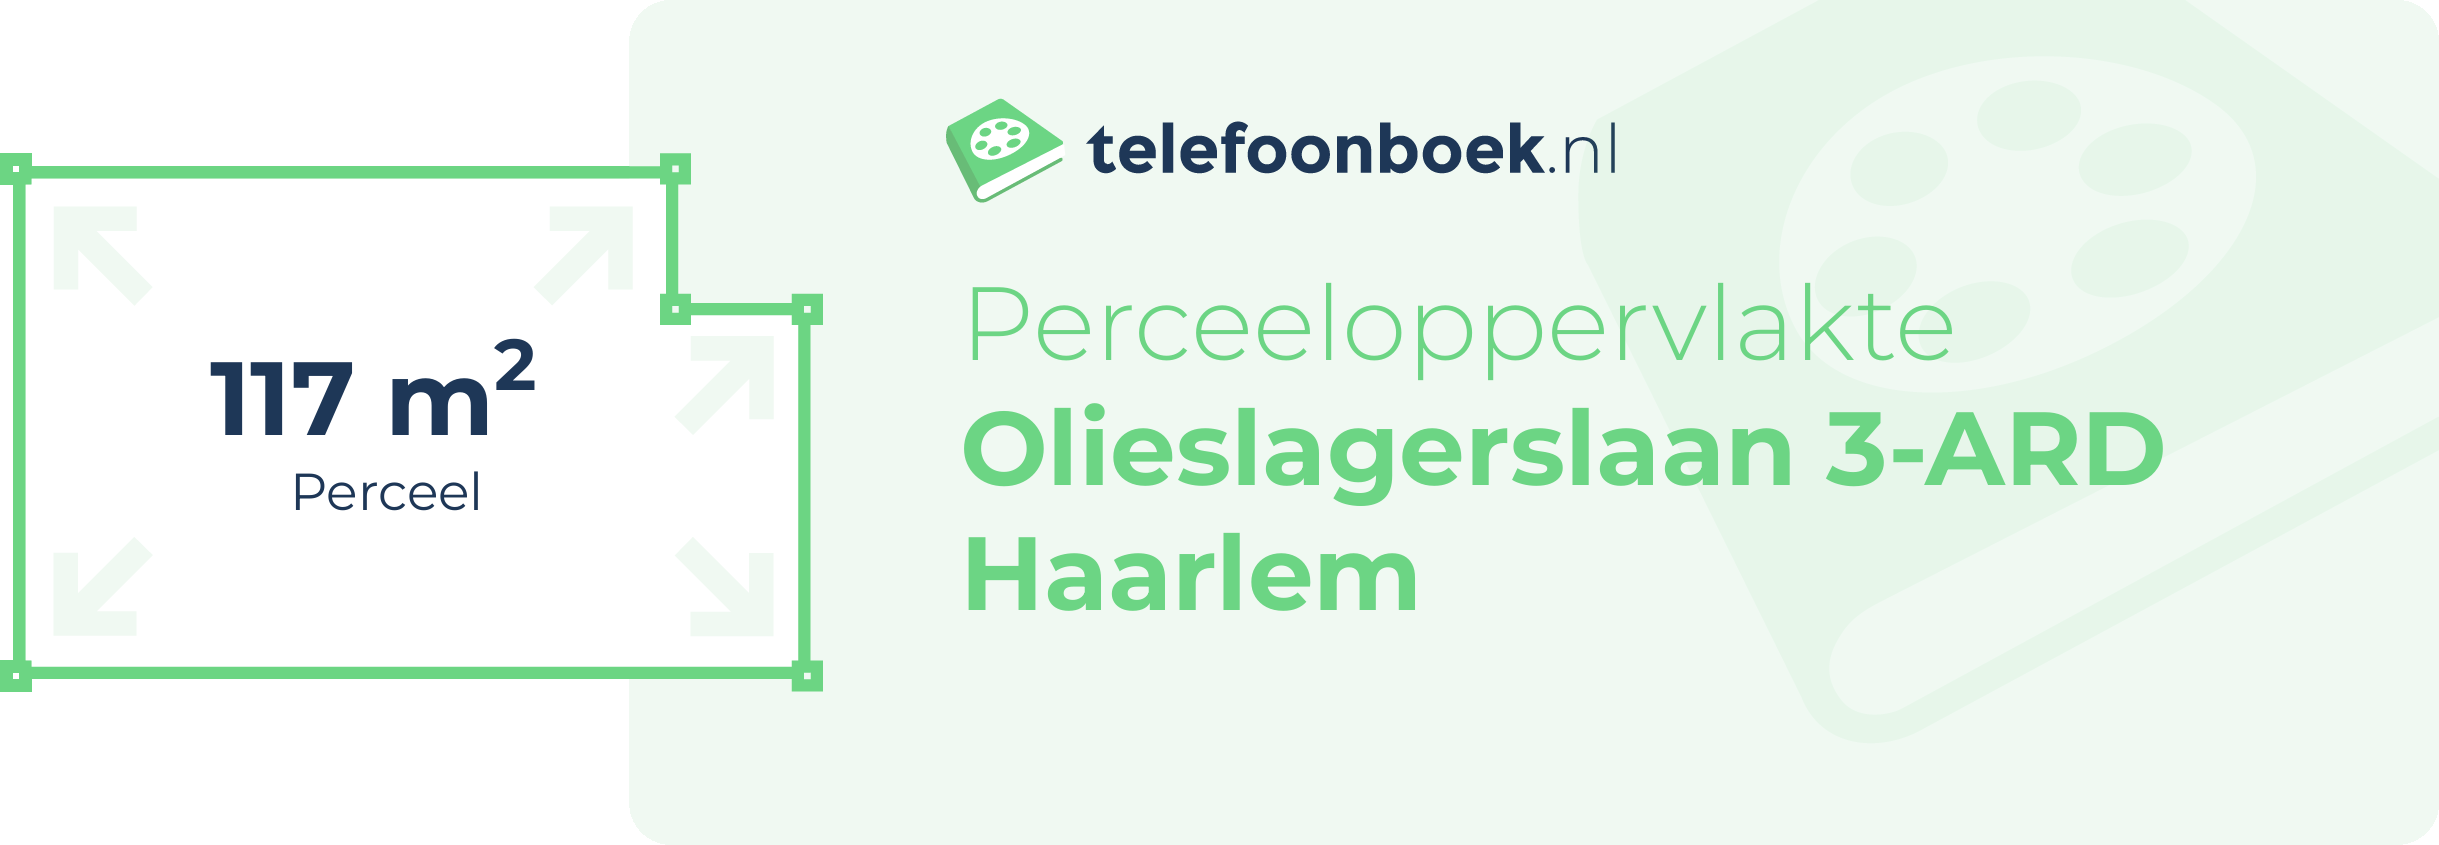 Perceeloppervlakte Olieslagerslaan 3-ARD Haarlem